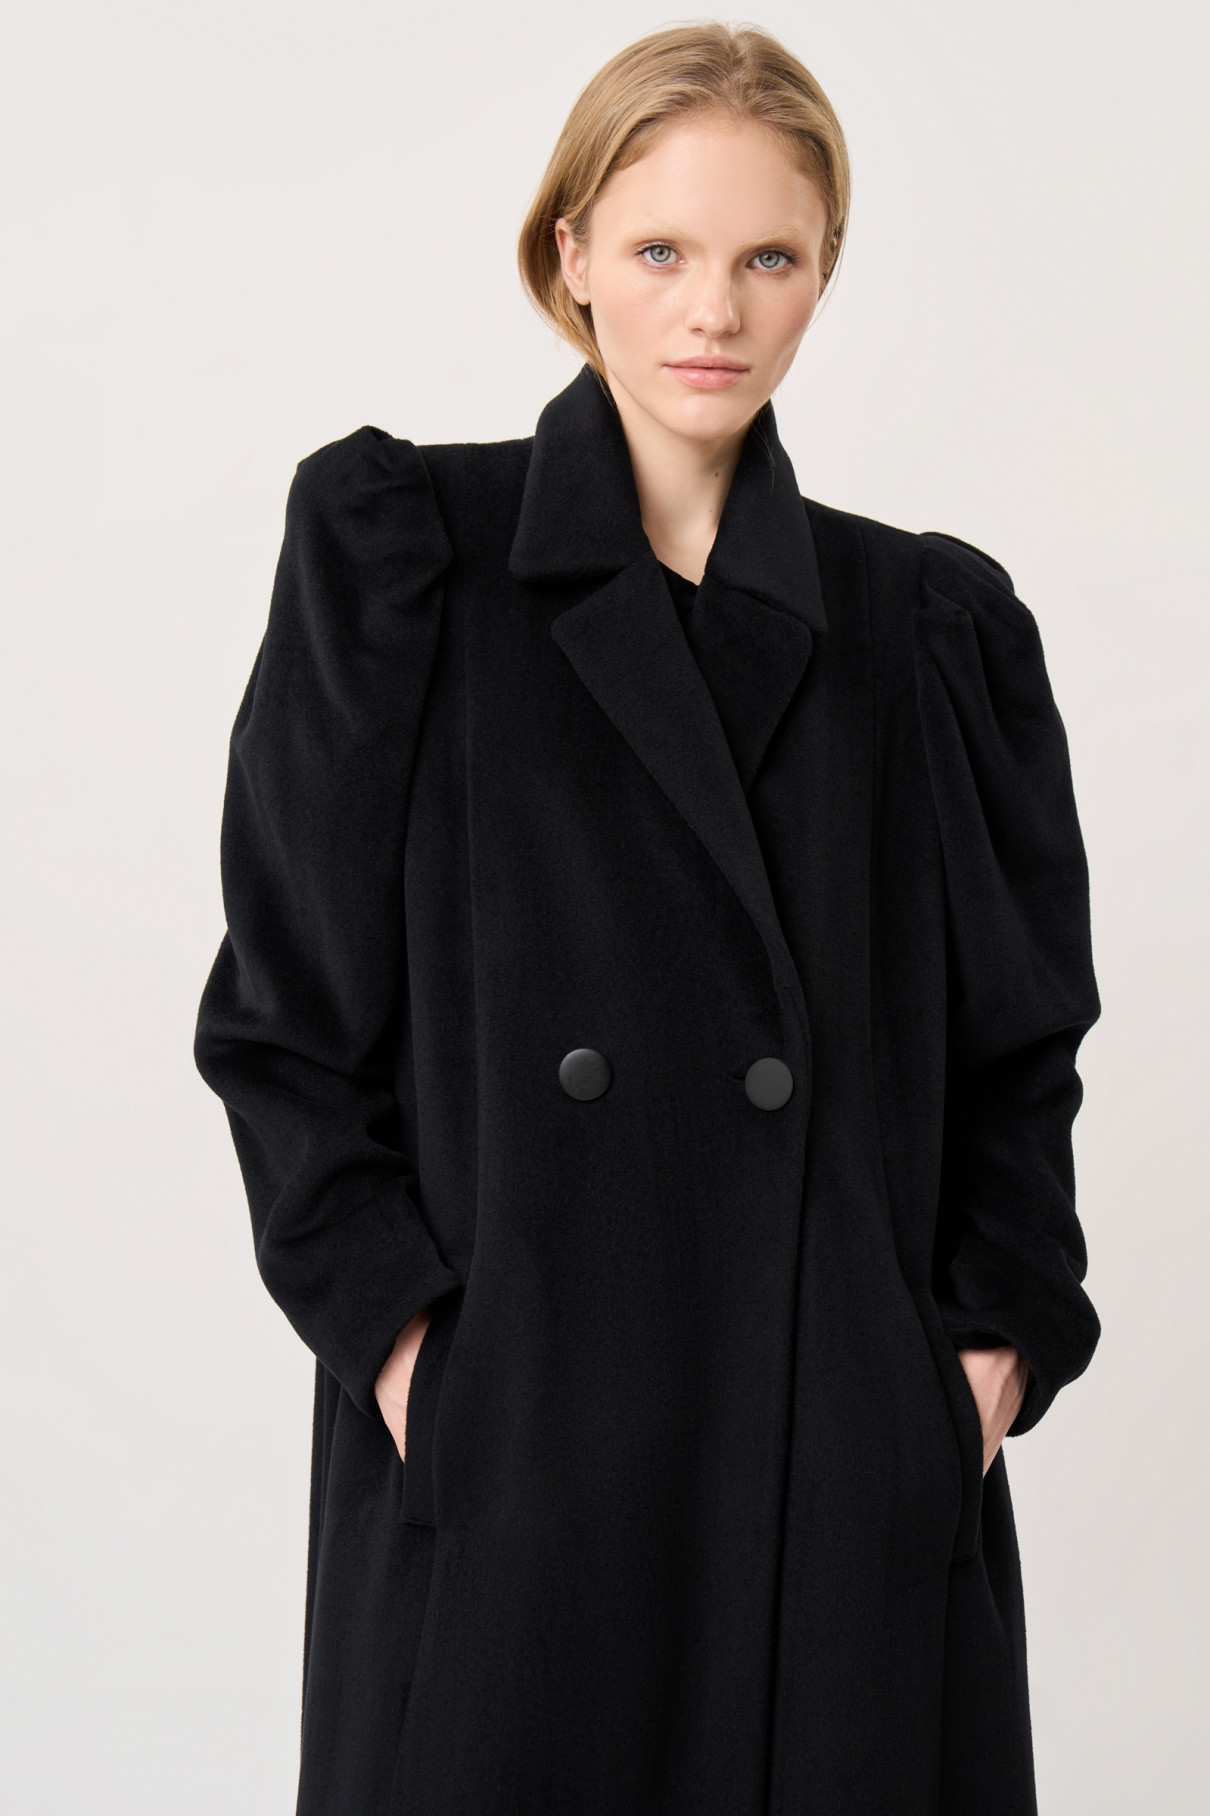 Двубортное черное пальто , Чёрный, арт. FR21-ПК-10-чр-4 купить в интернет-магазине